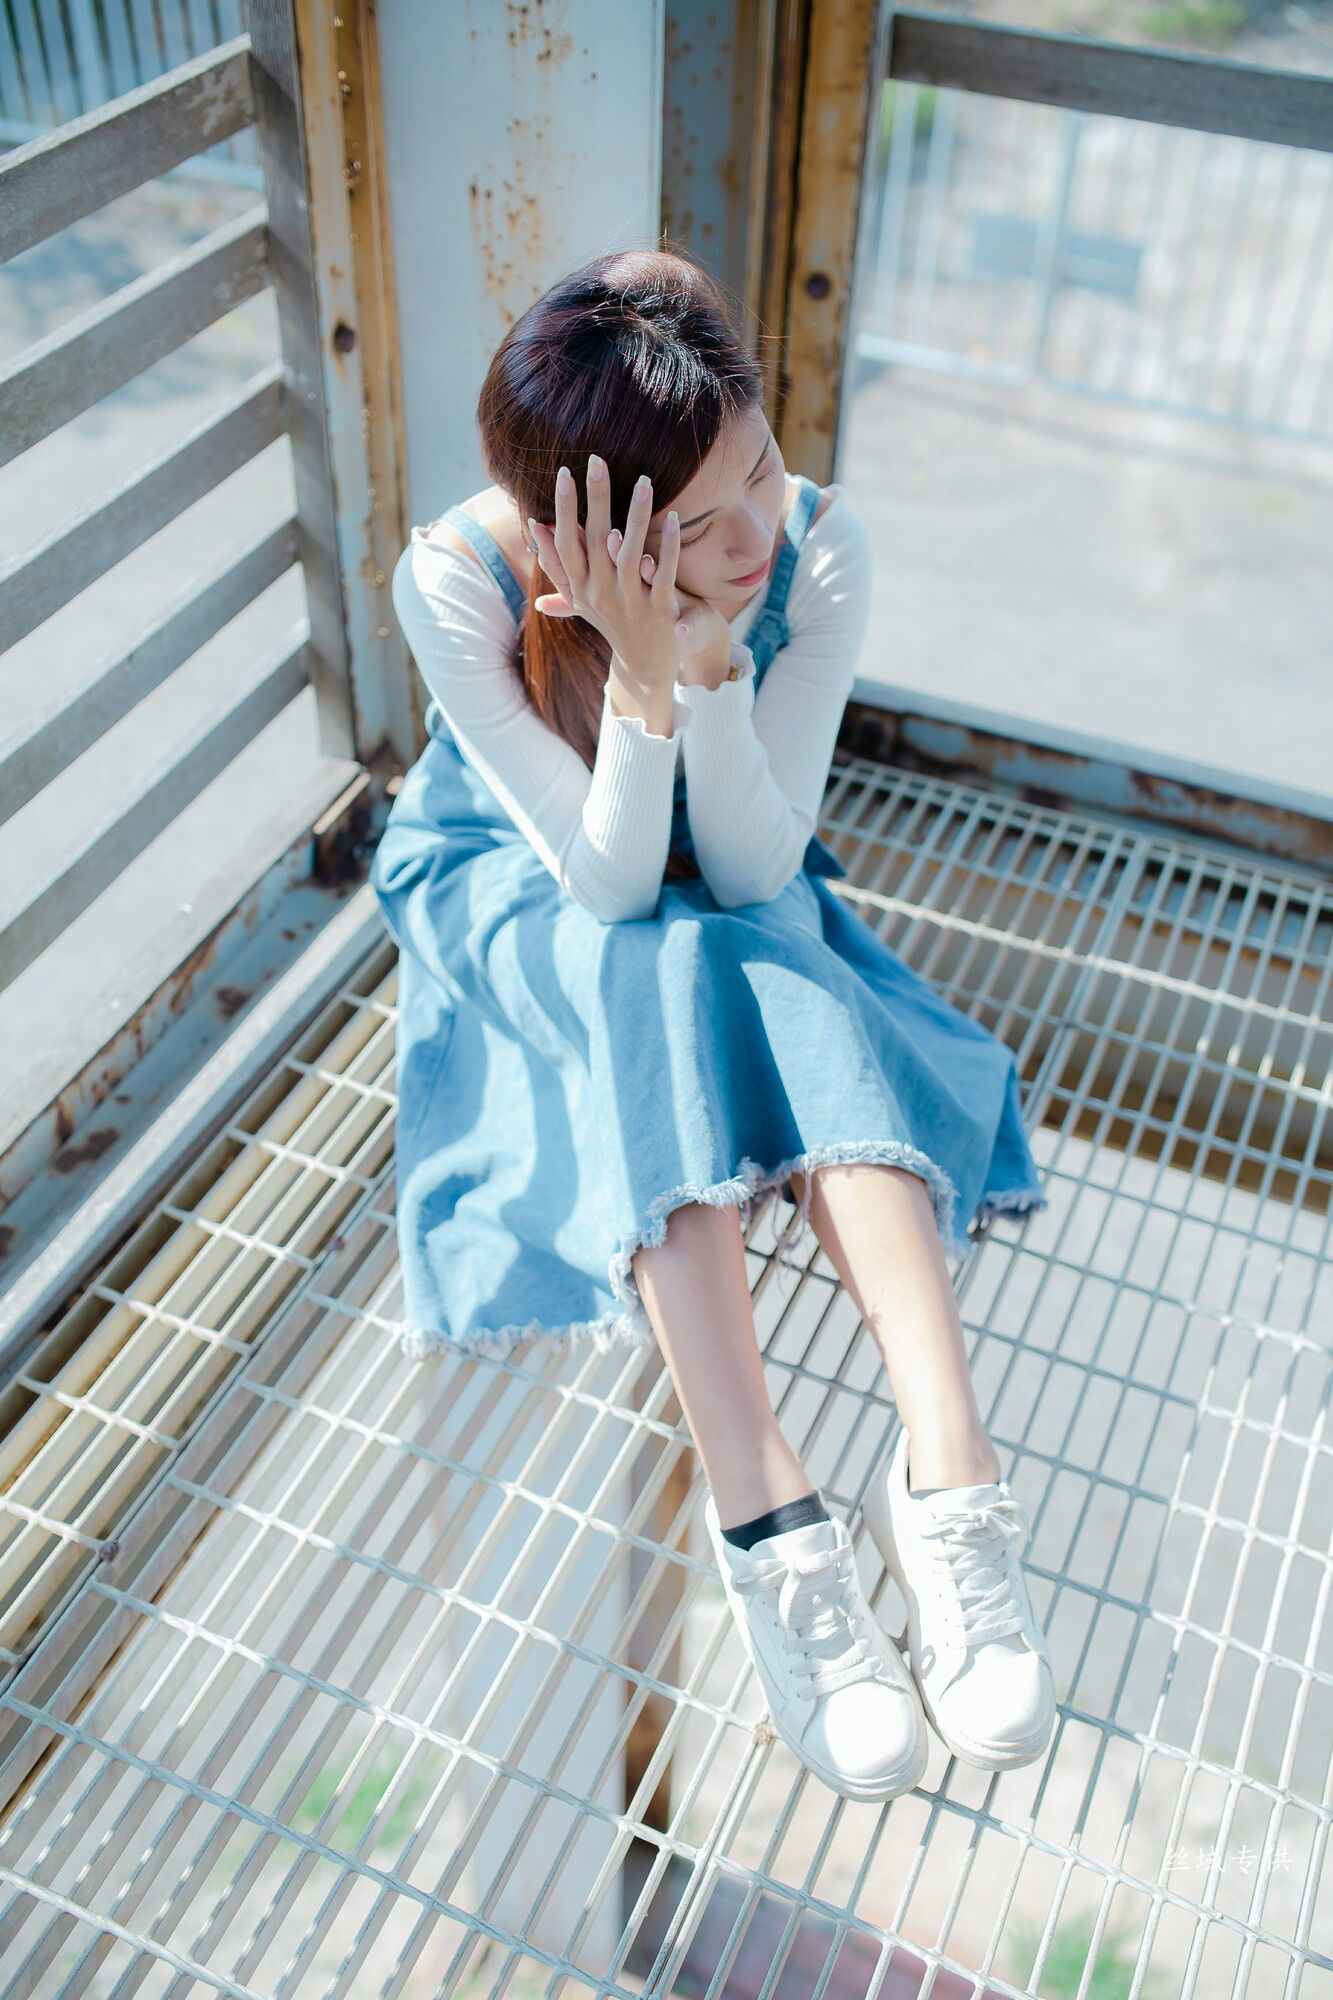 [Taiwan Zhengmei] Fang Qiqi “Elegant Dress” photo set